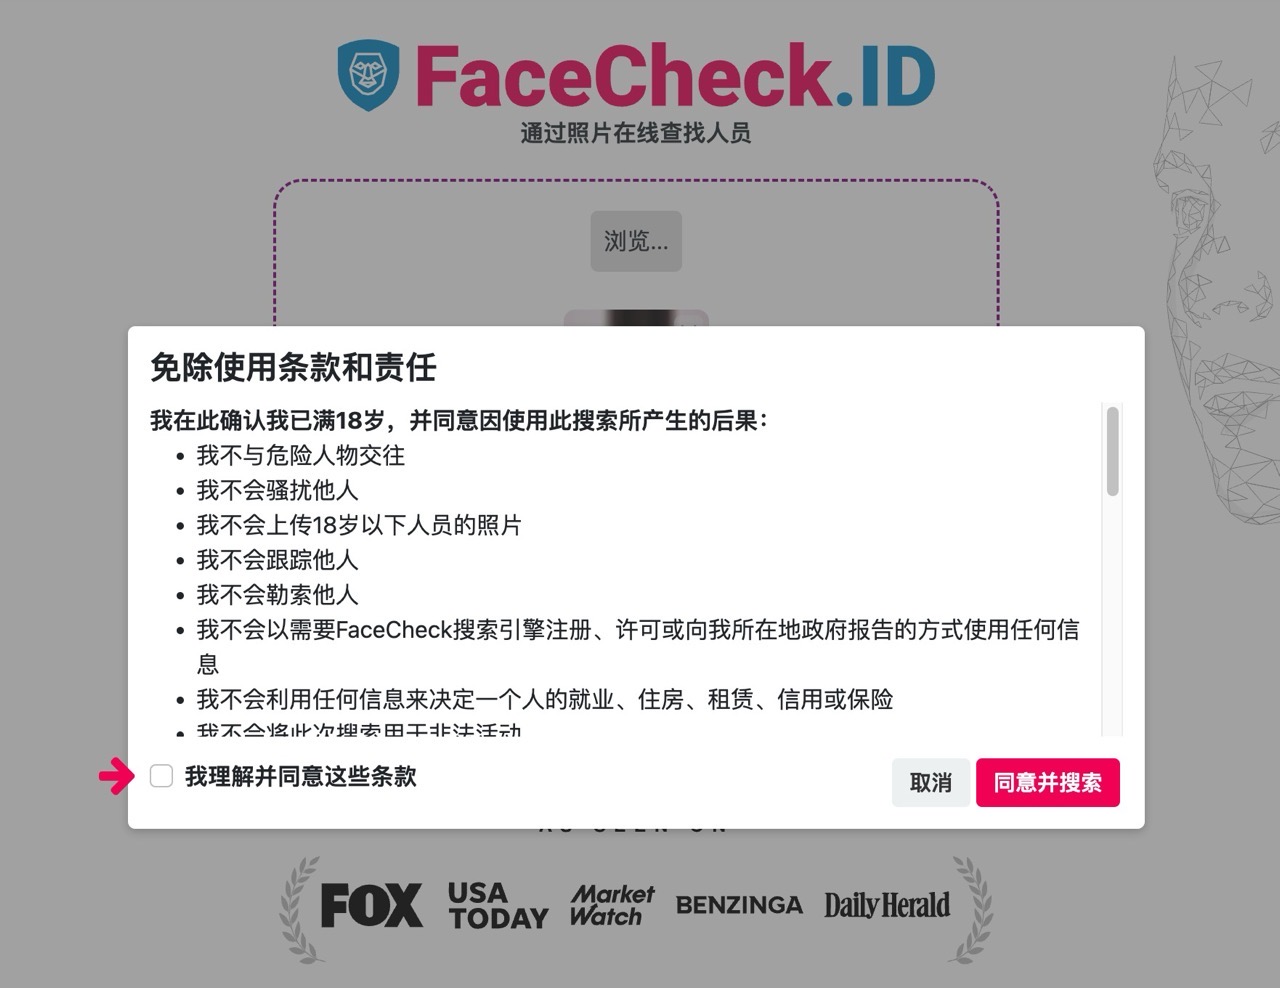 FaceCheck